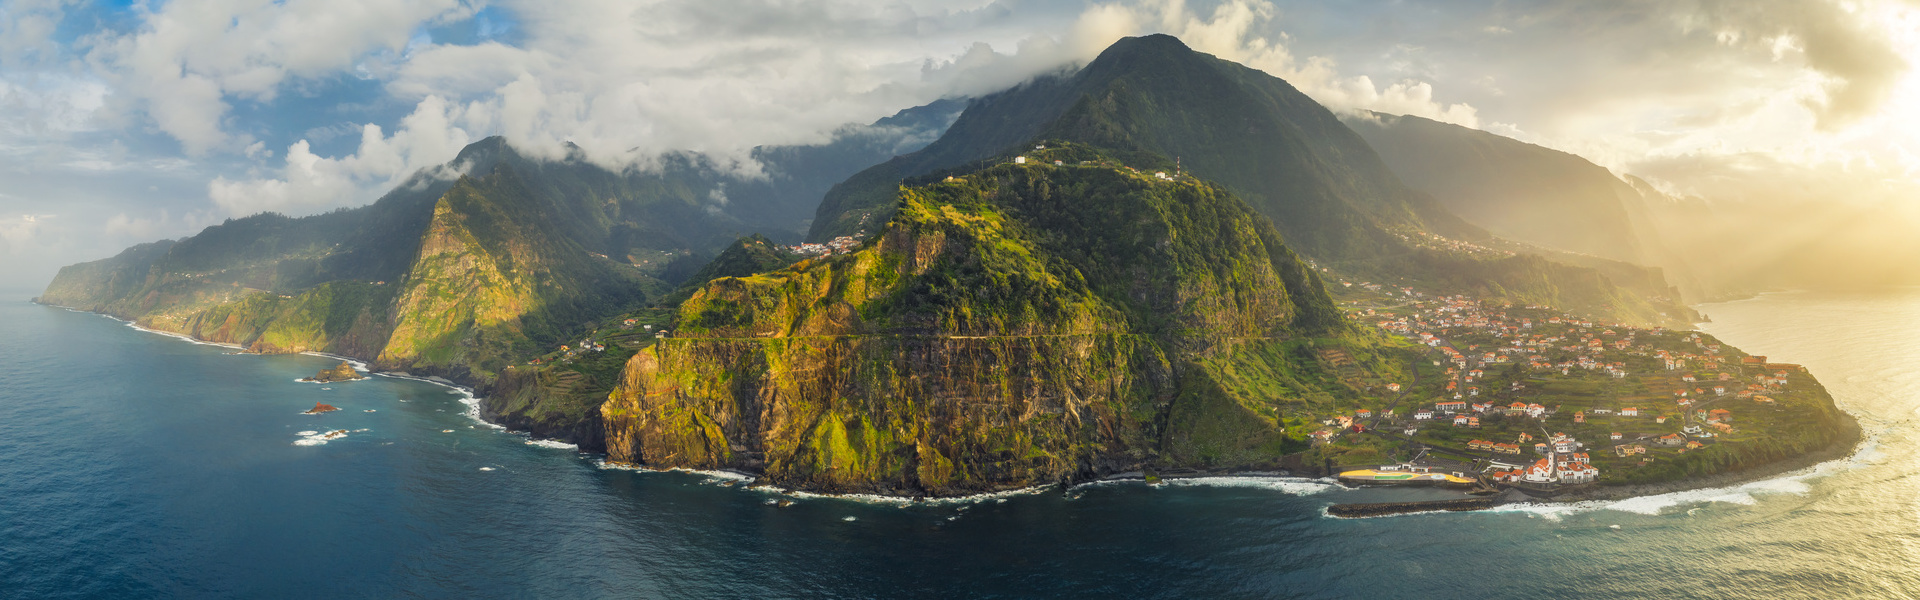 Visita alrededor de Madeira en dos días